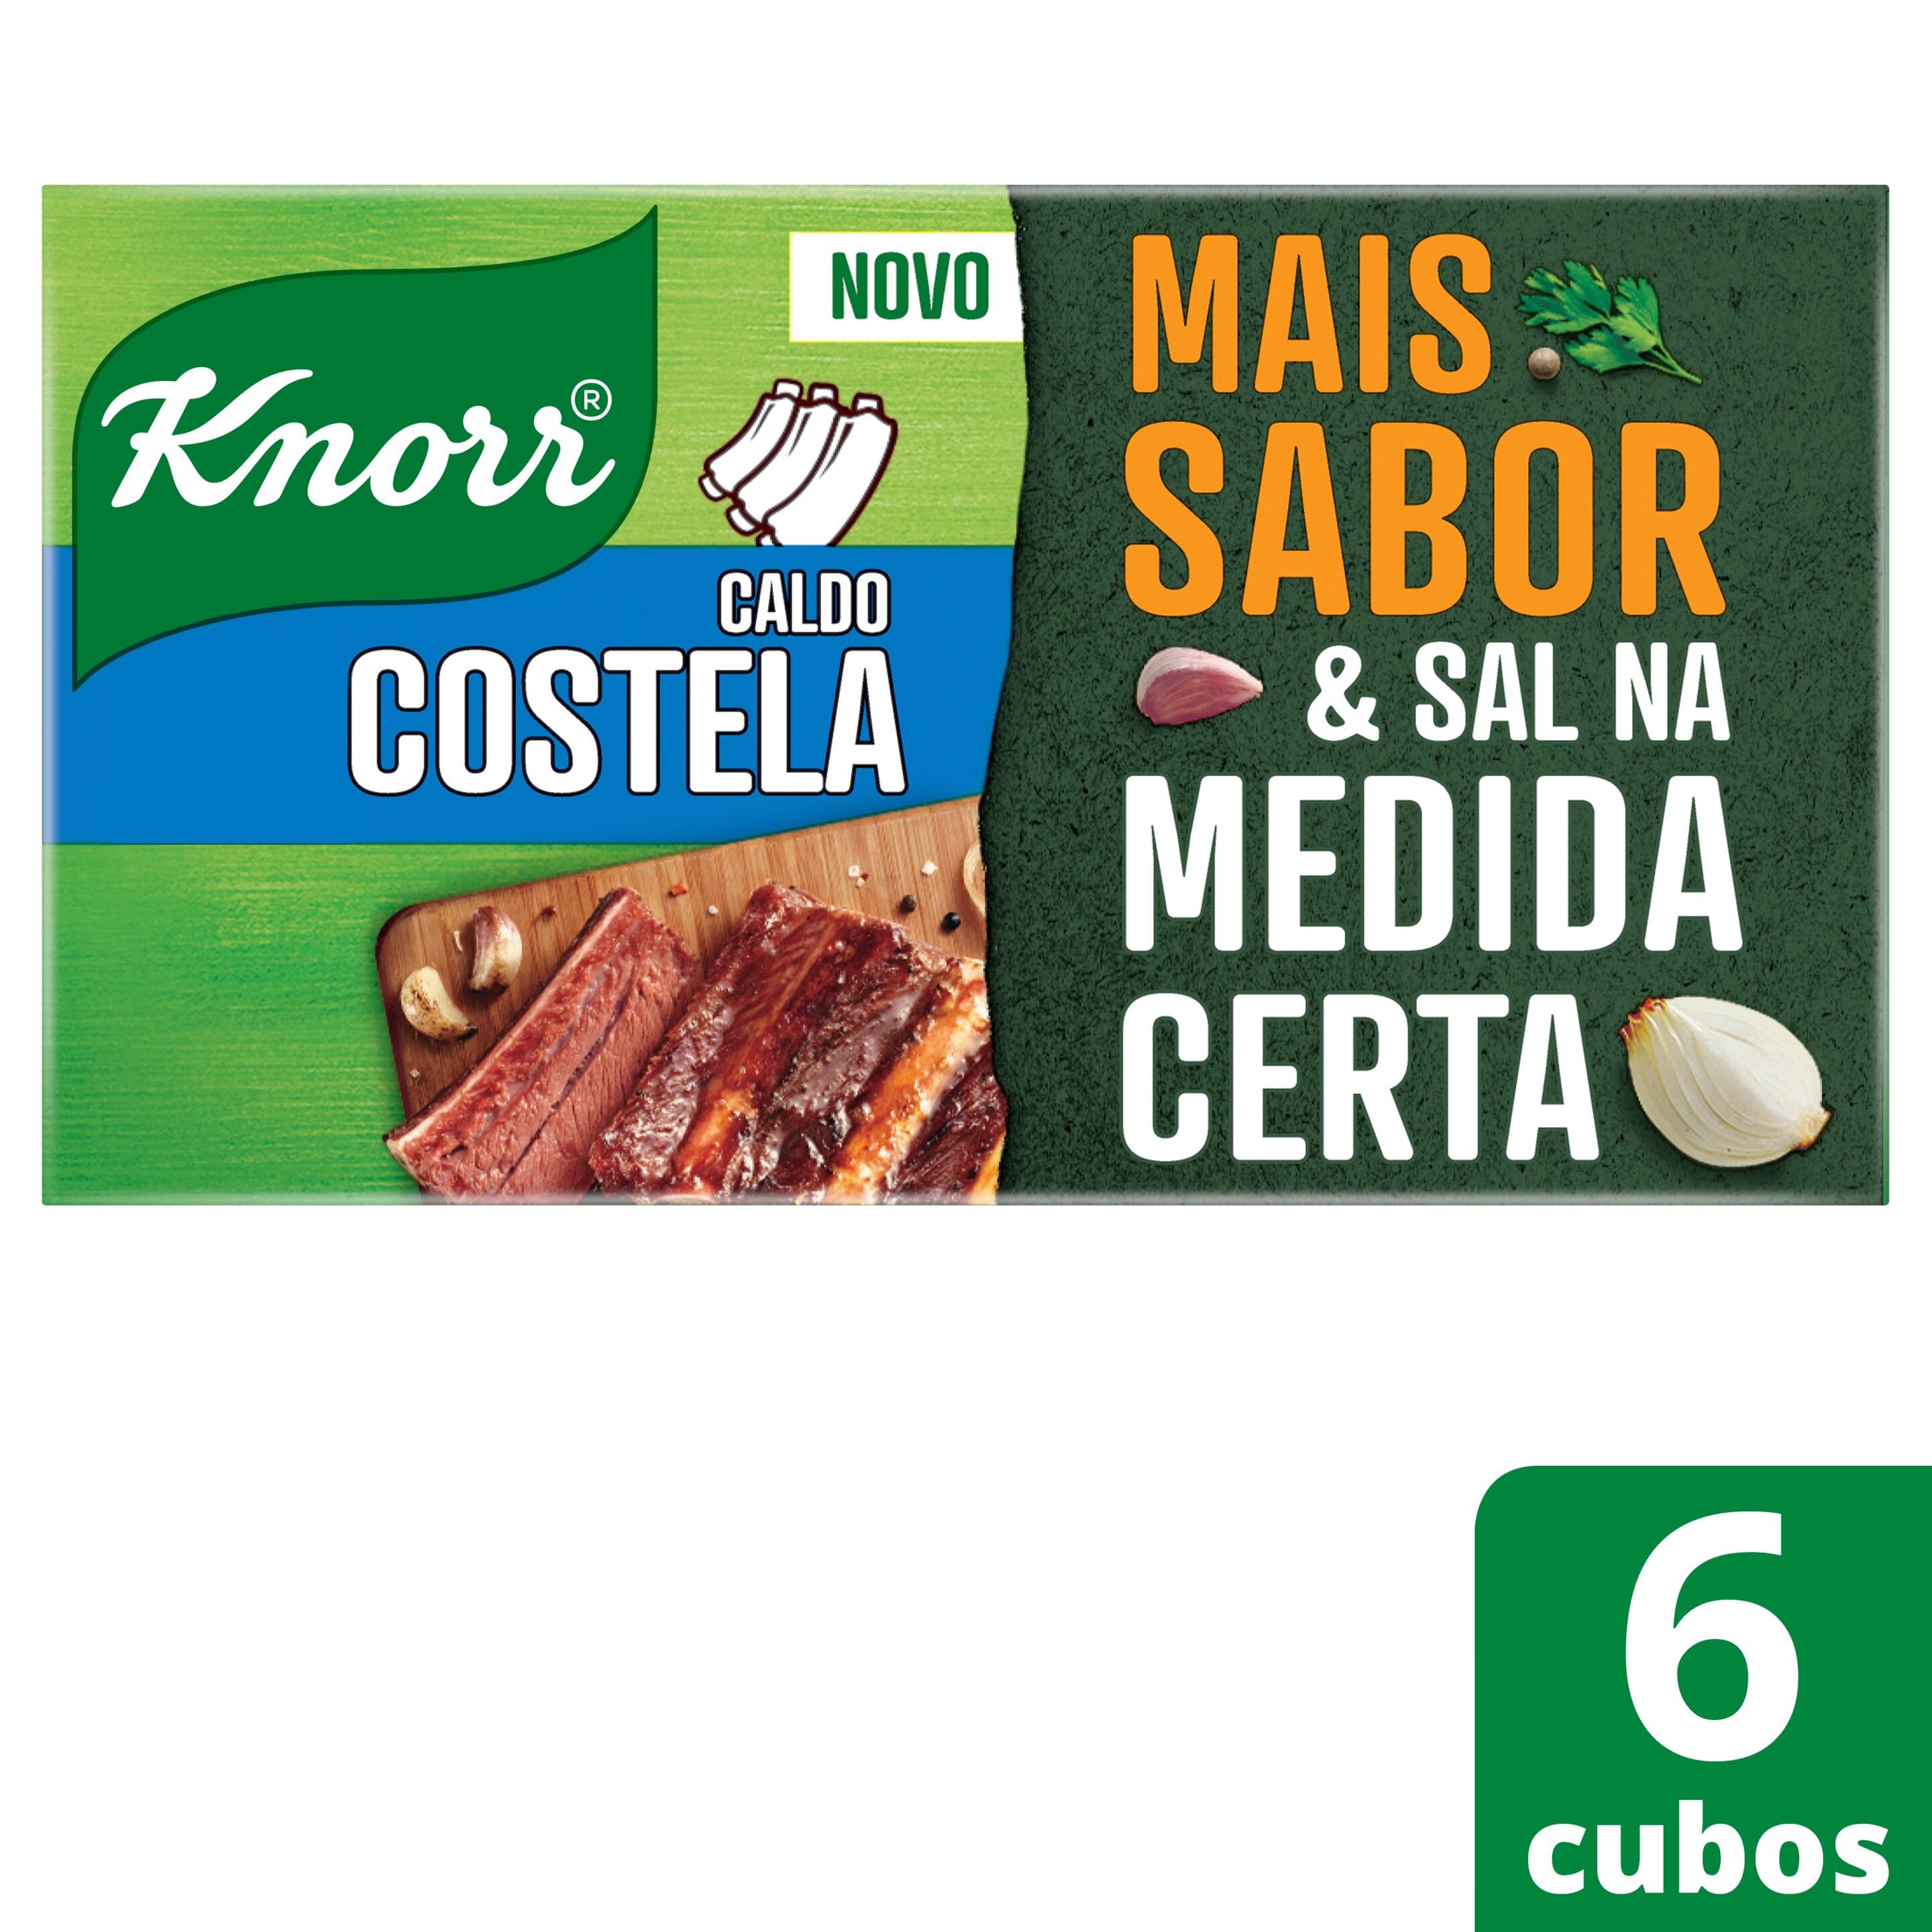 Caldo Knorr Costela